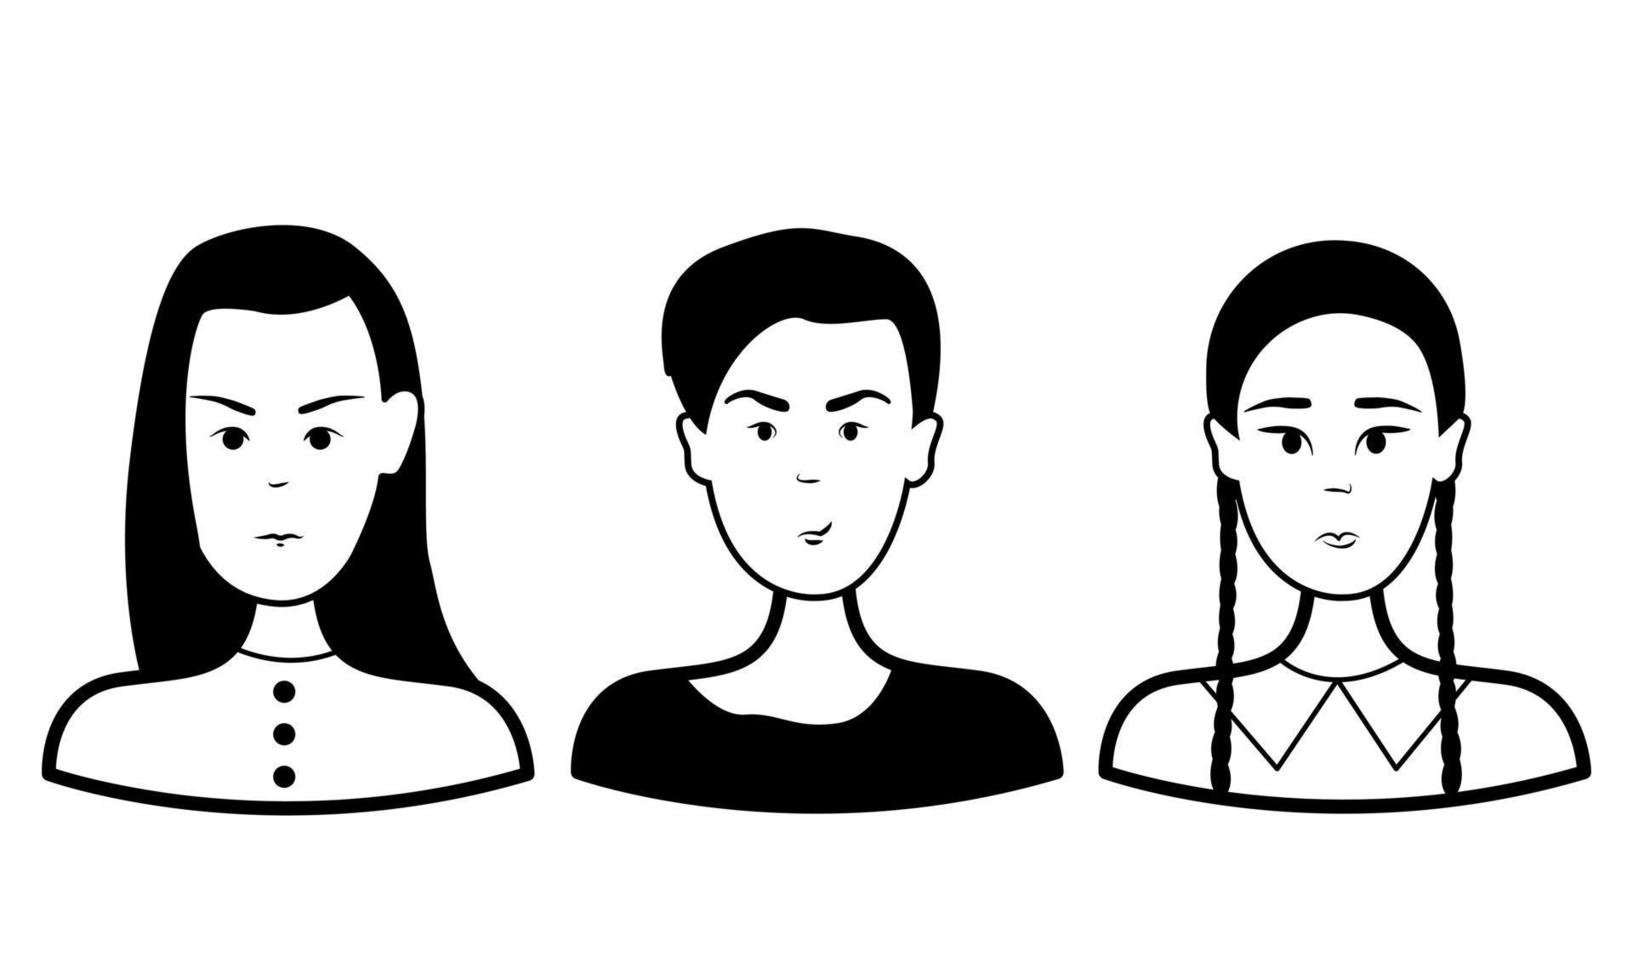 doodle conjunto rosto de pessoas. três meninas. contorno vetorial. ilustração em preto e branco vetor